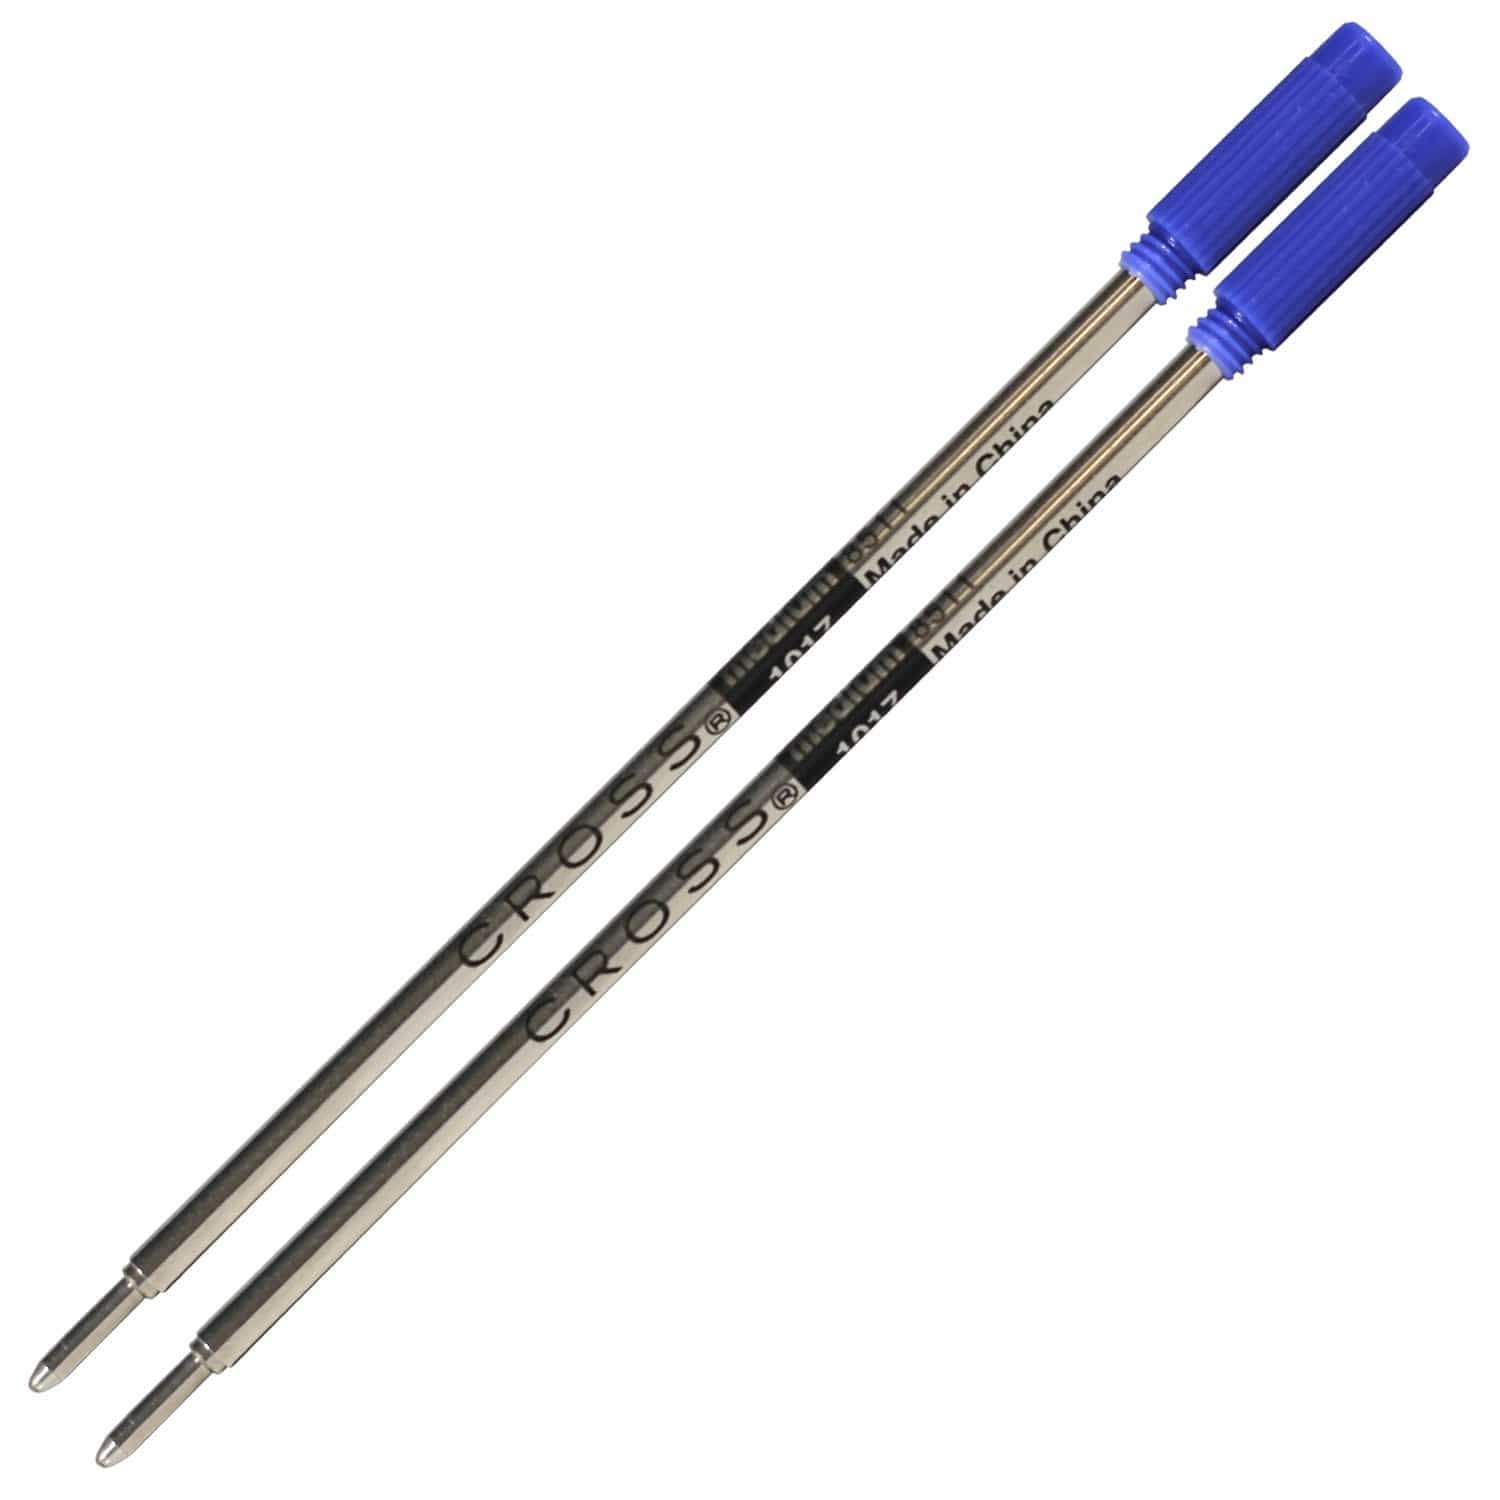 901 - Classic Zebra ballpoint pen, refillable - Zebra Pen EU